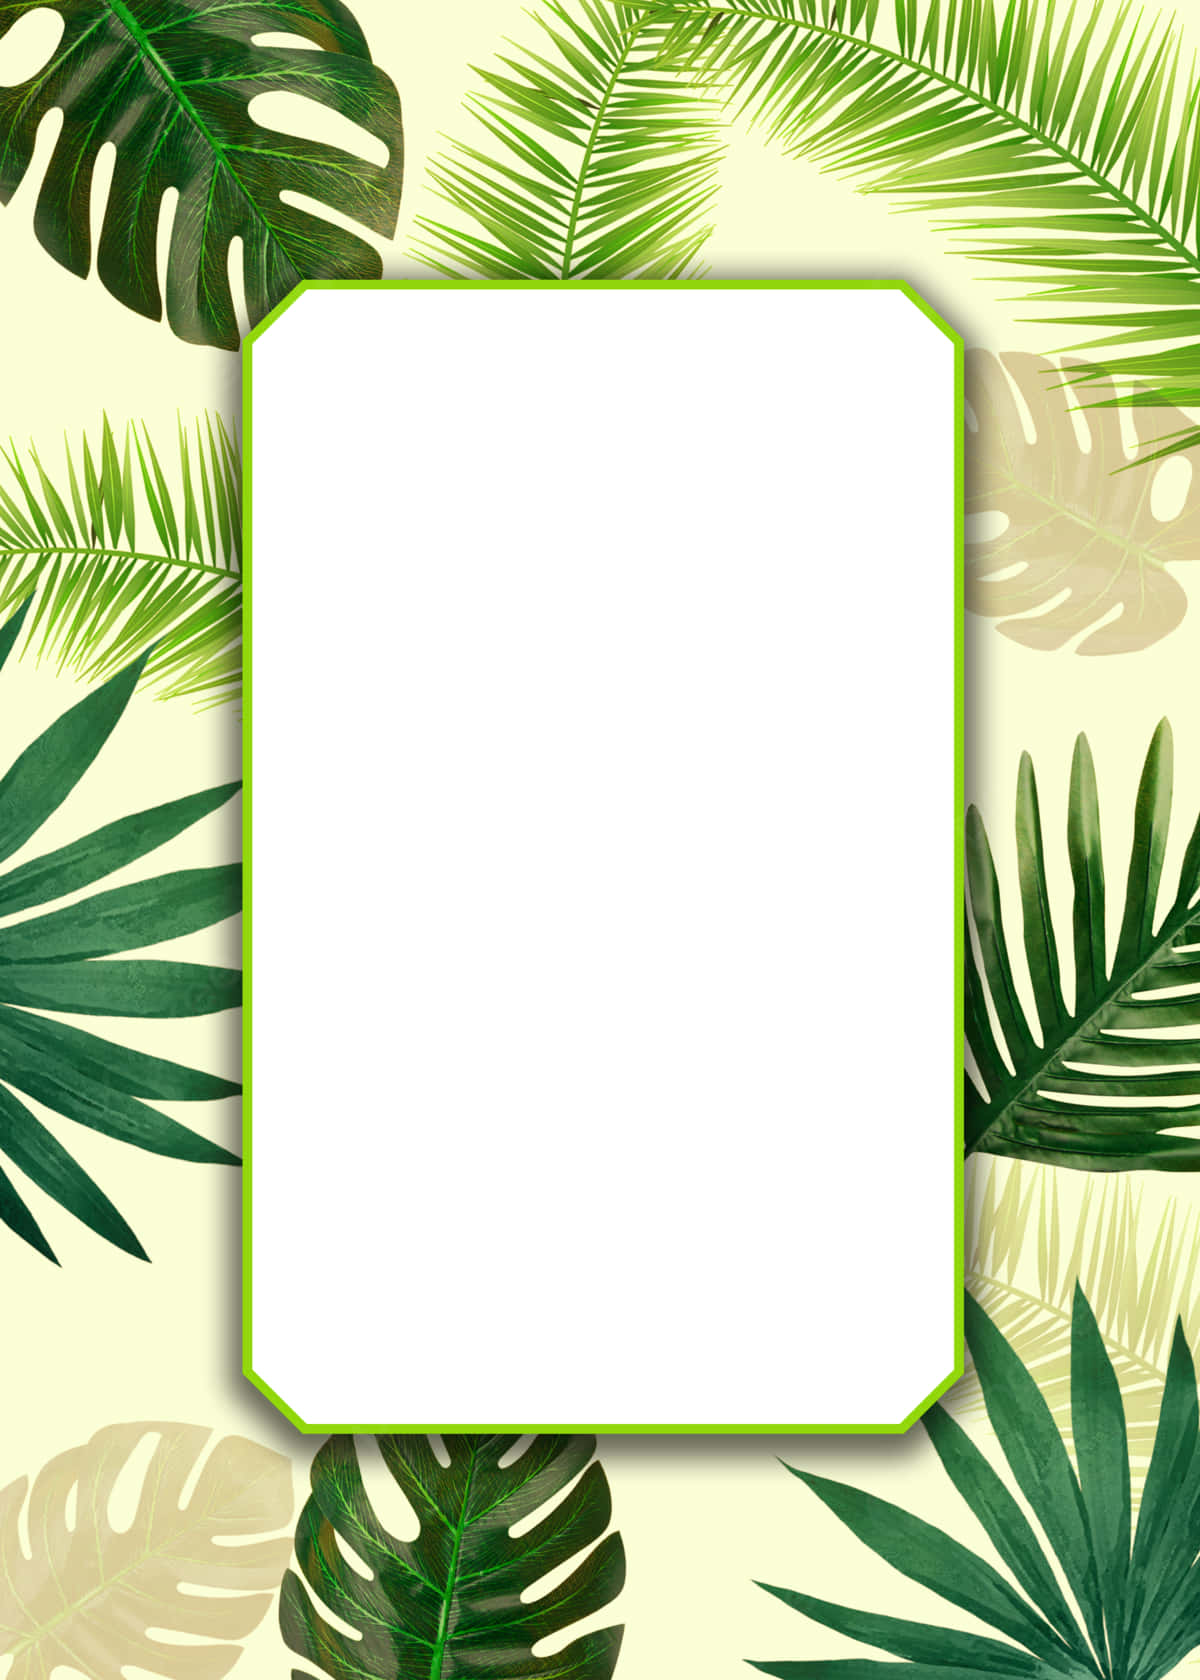 En æstetisk betragtning af tropiske palmeblade på en hvid baggrund. Wallpaper